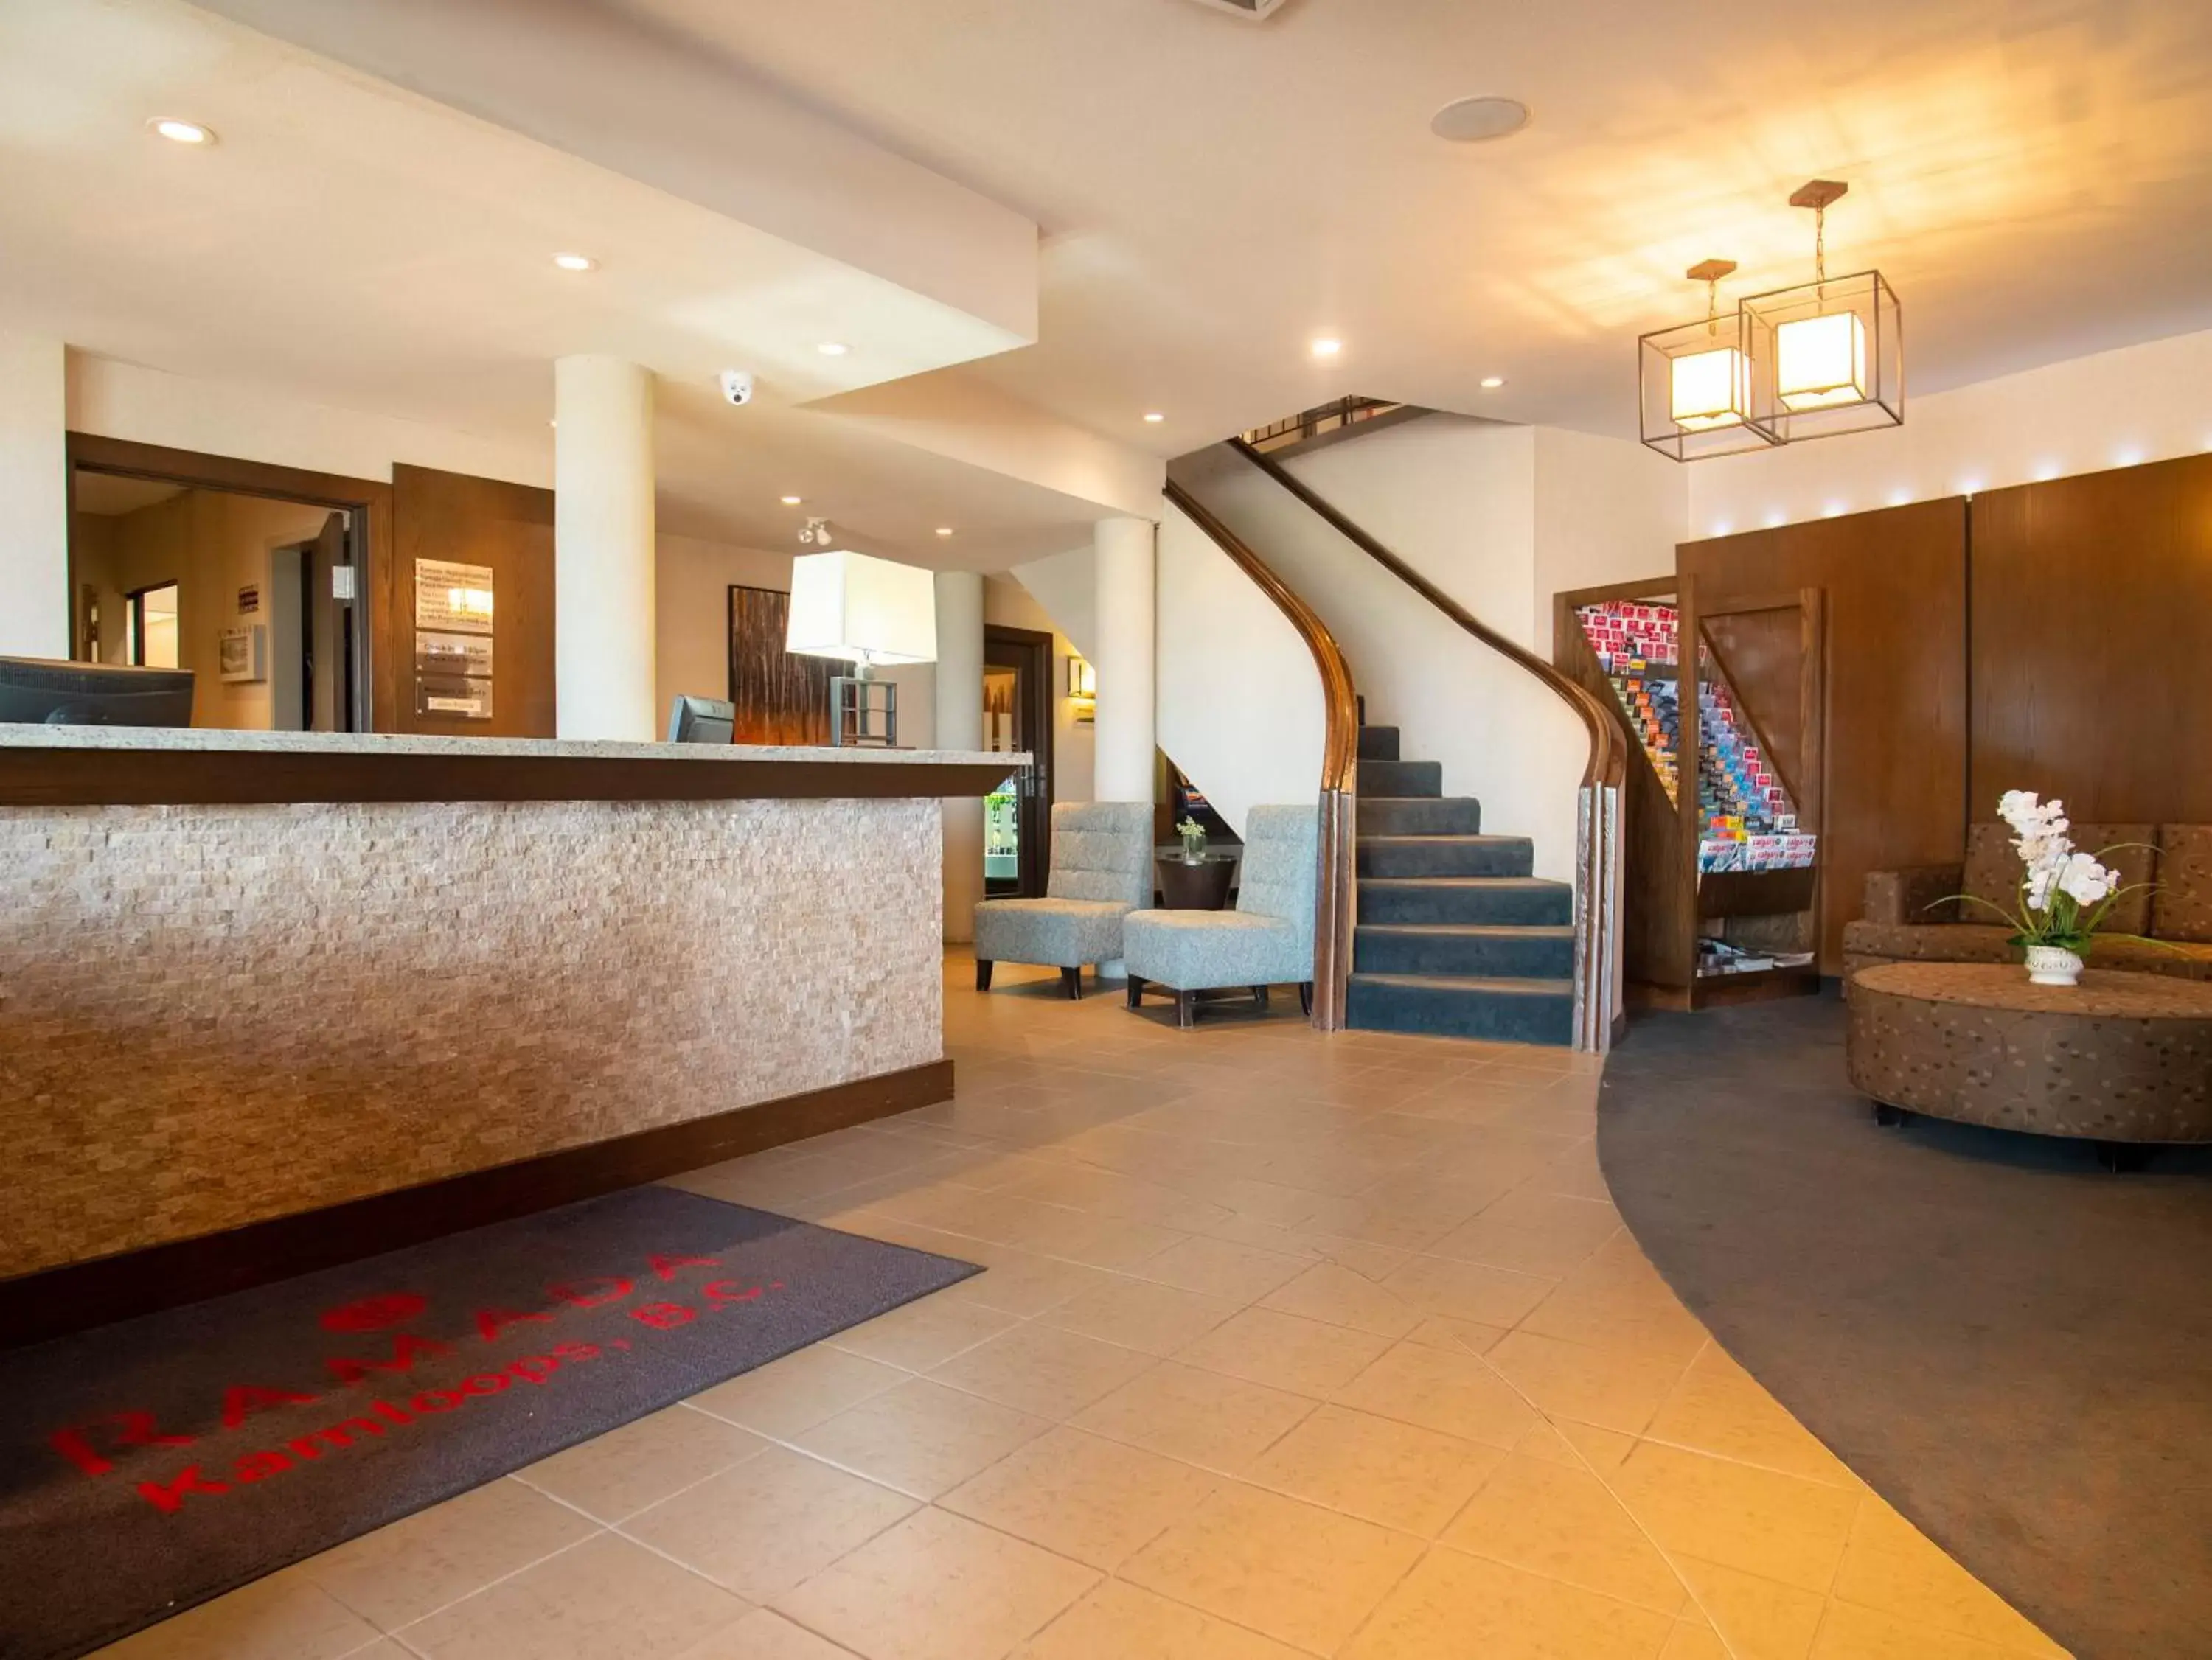 Lobby or reception, Lobby/Reception in Ramada by Wyndham Kamloops